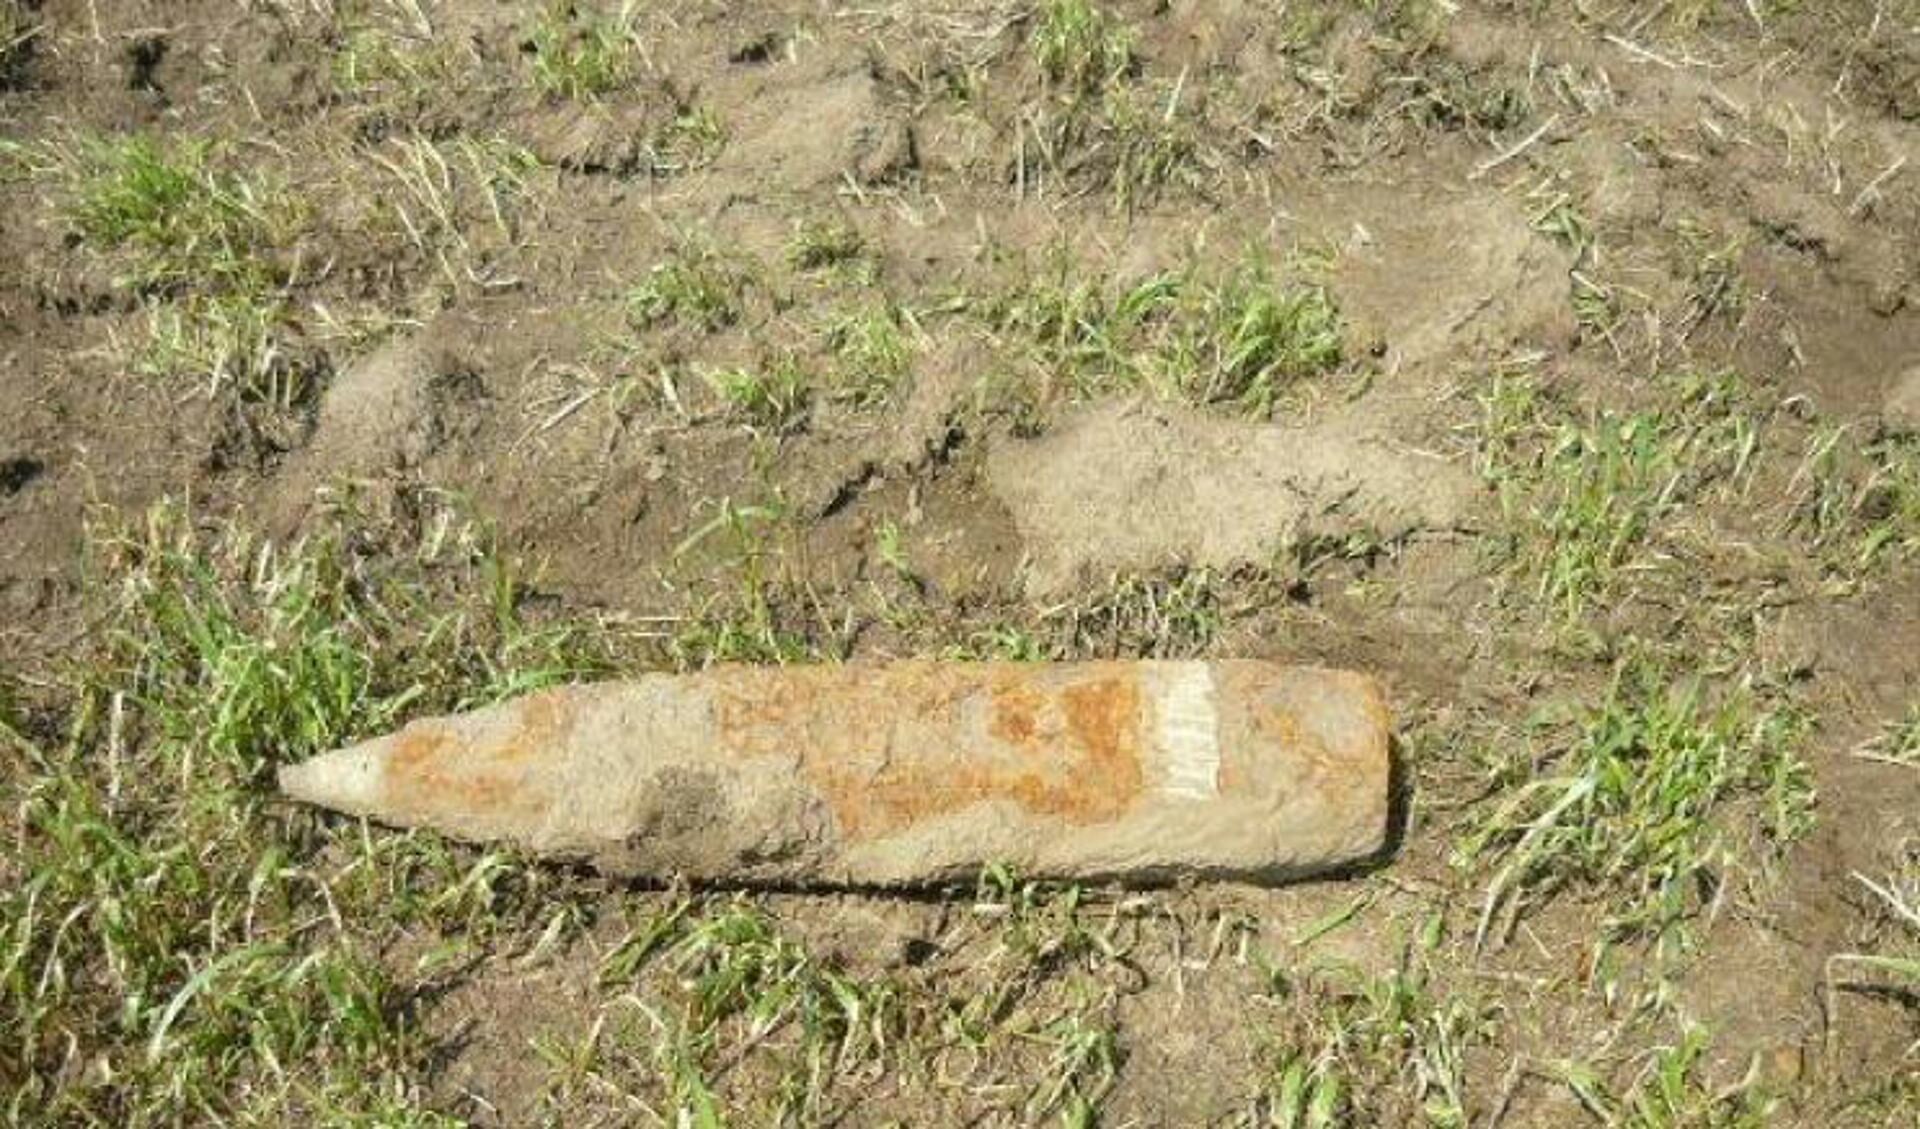 Een granaat uit de Tweede Wereldoorlog, niet de granaat die in Veen gevonden is.